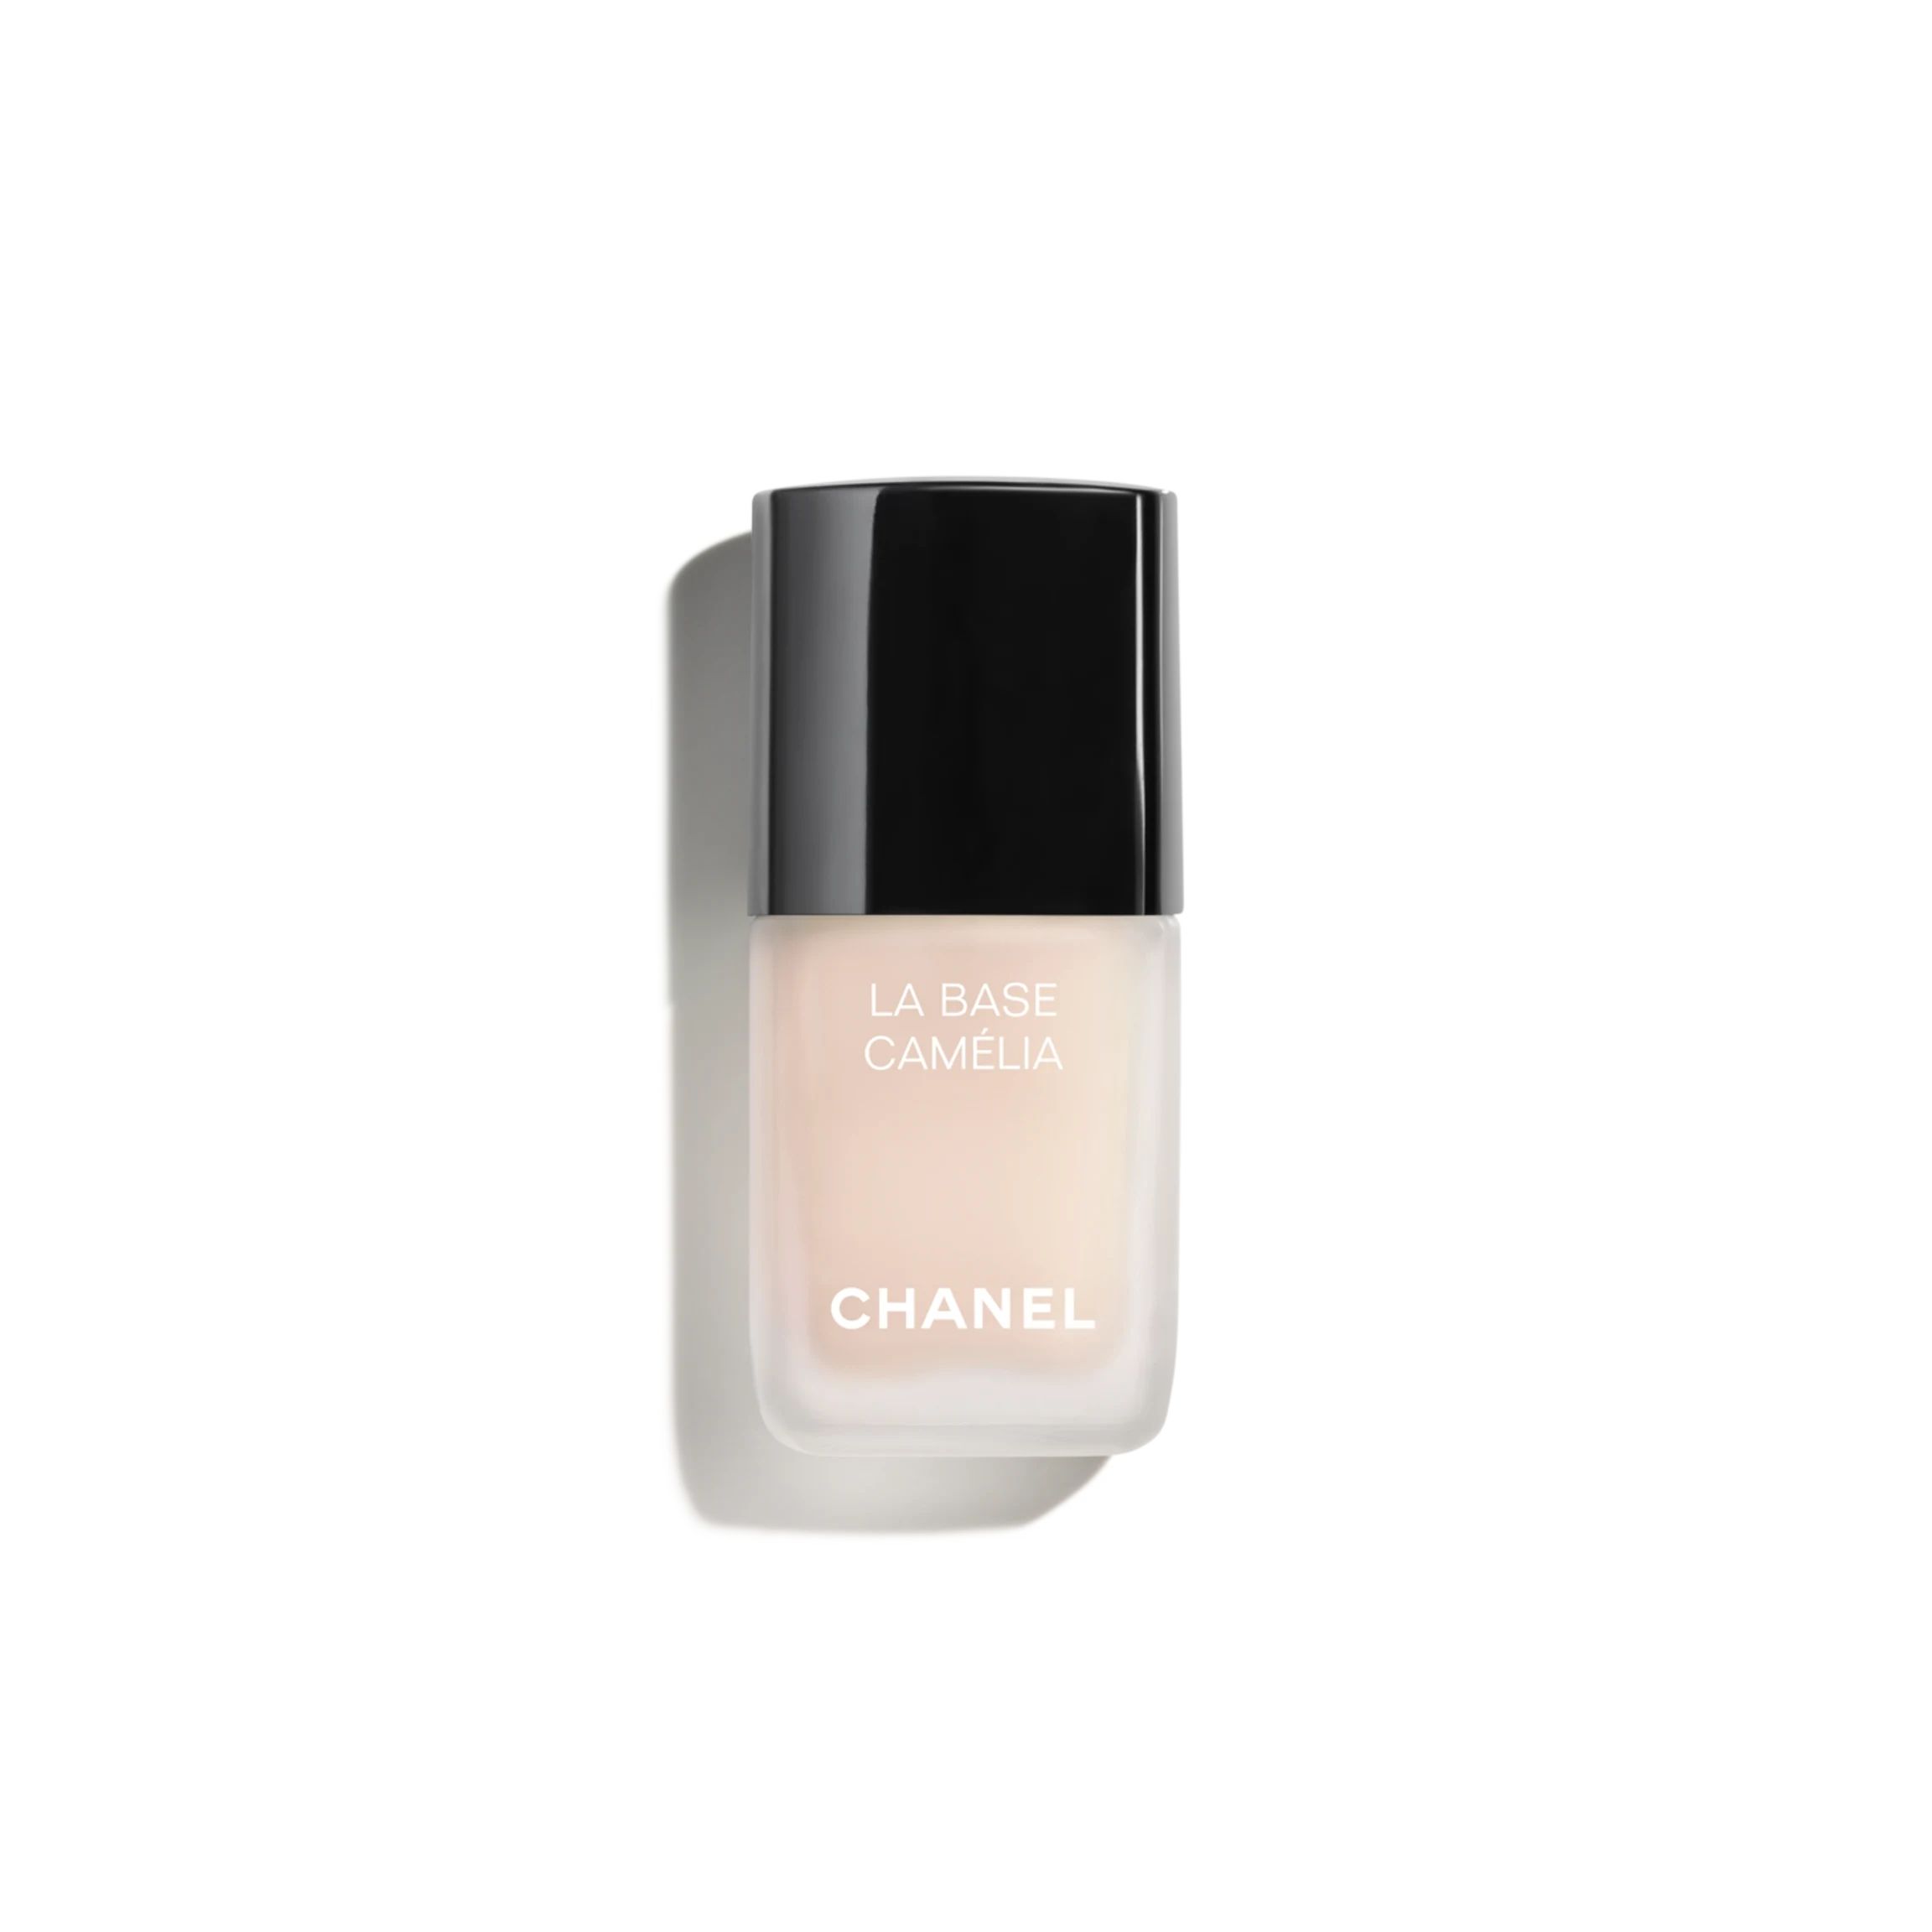 LA BASE CAMÉLIA | Chanel, Inc. (US)